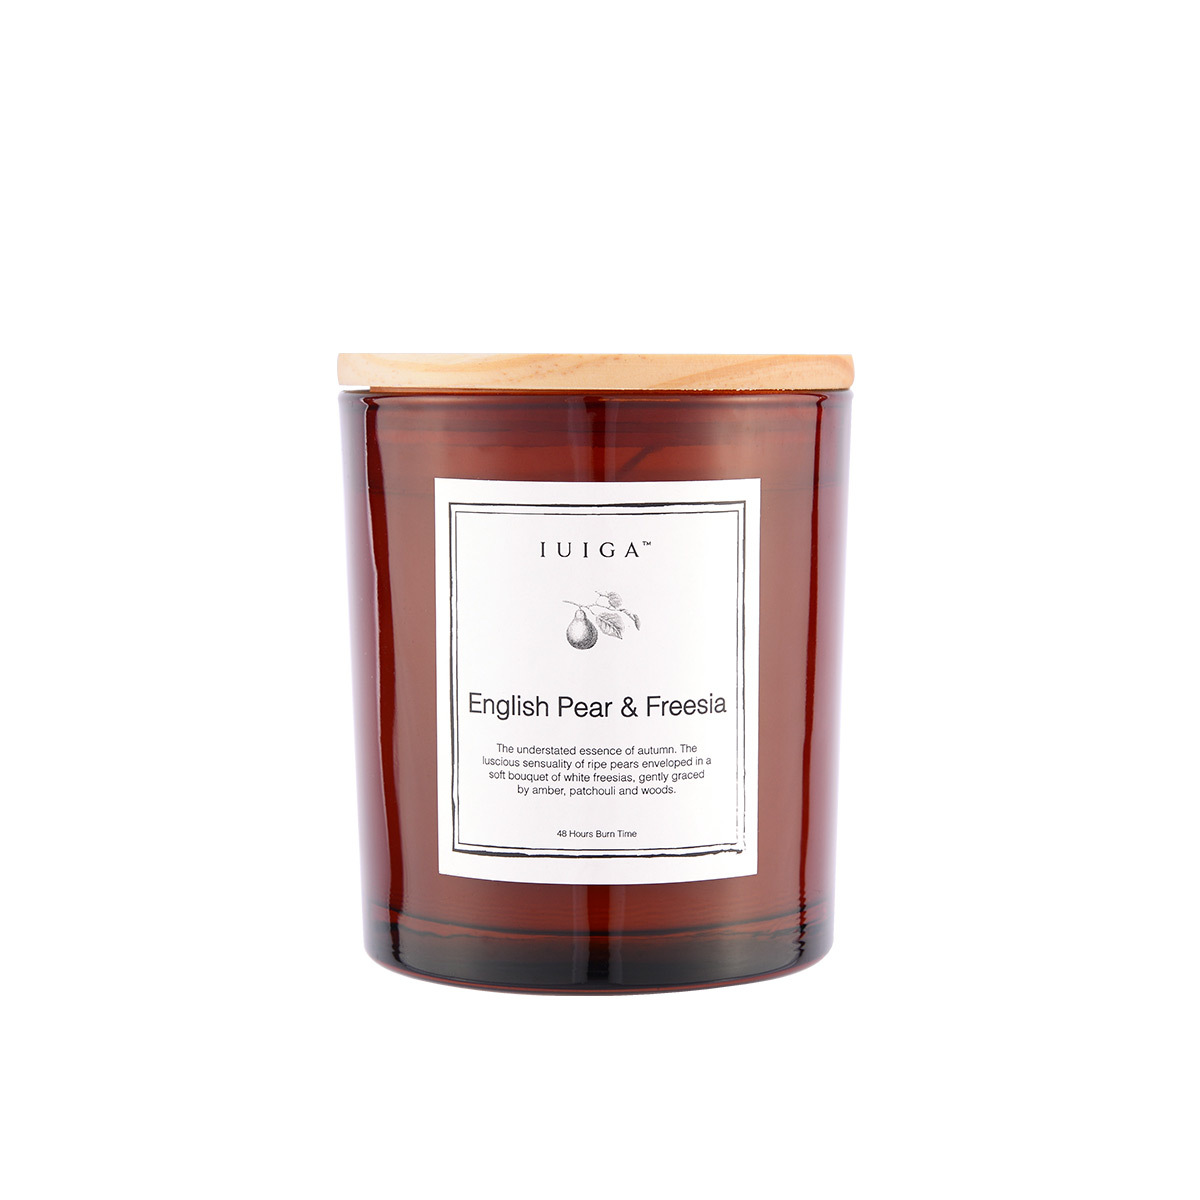 English Pear and Freesia Soy Wax Candle - lilin aromaterapi iuiga